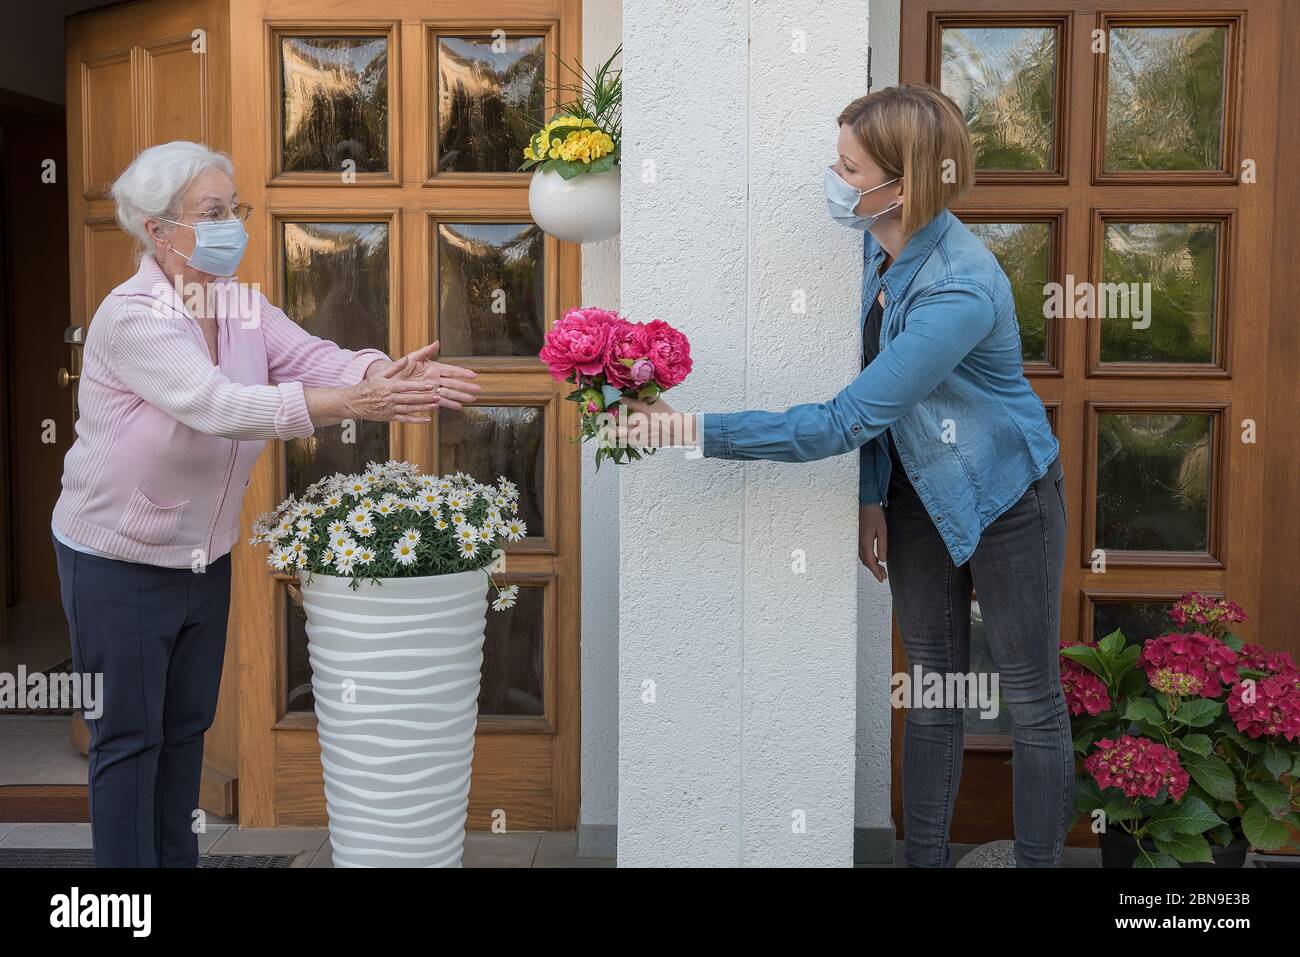 Donna anziana con maschera facciale ottiene fiori dalla donna vicina alla porta della casa Foto Stock